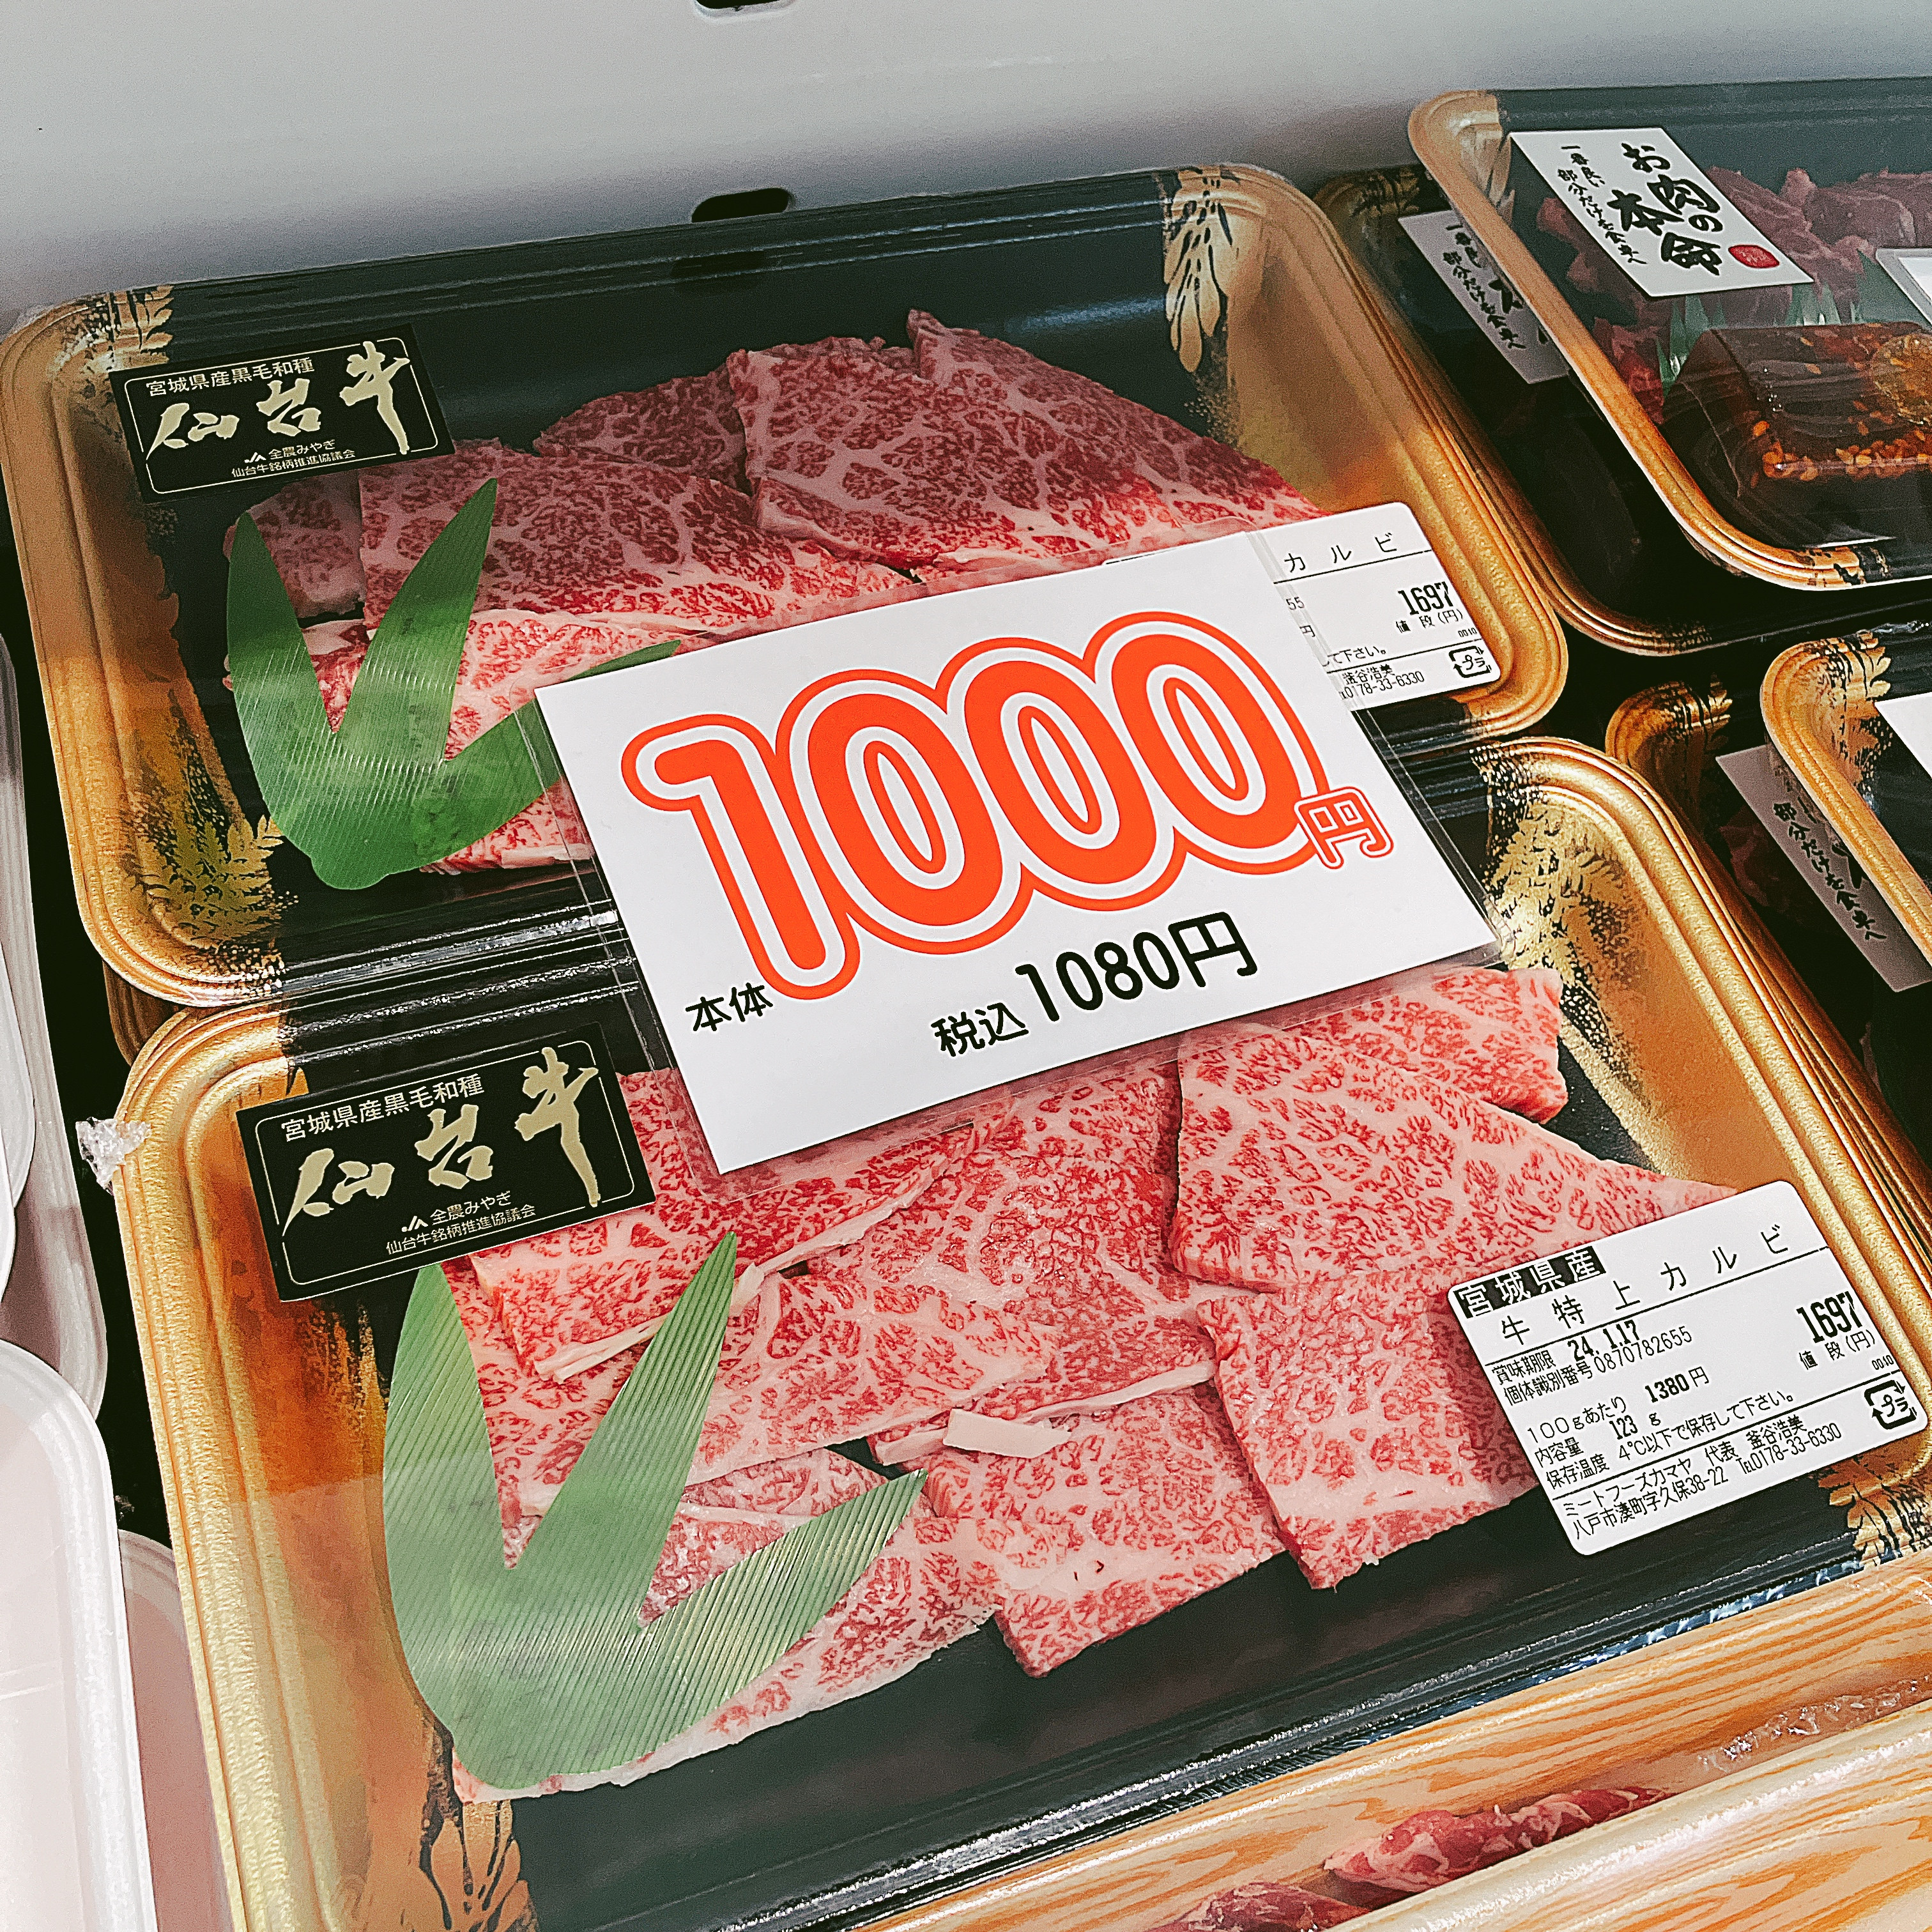 本日は宮城県産仙台牛特上カルビがお買得です。